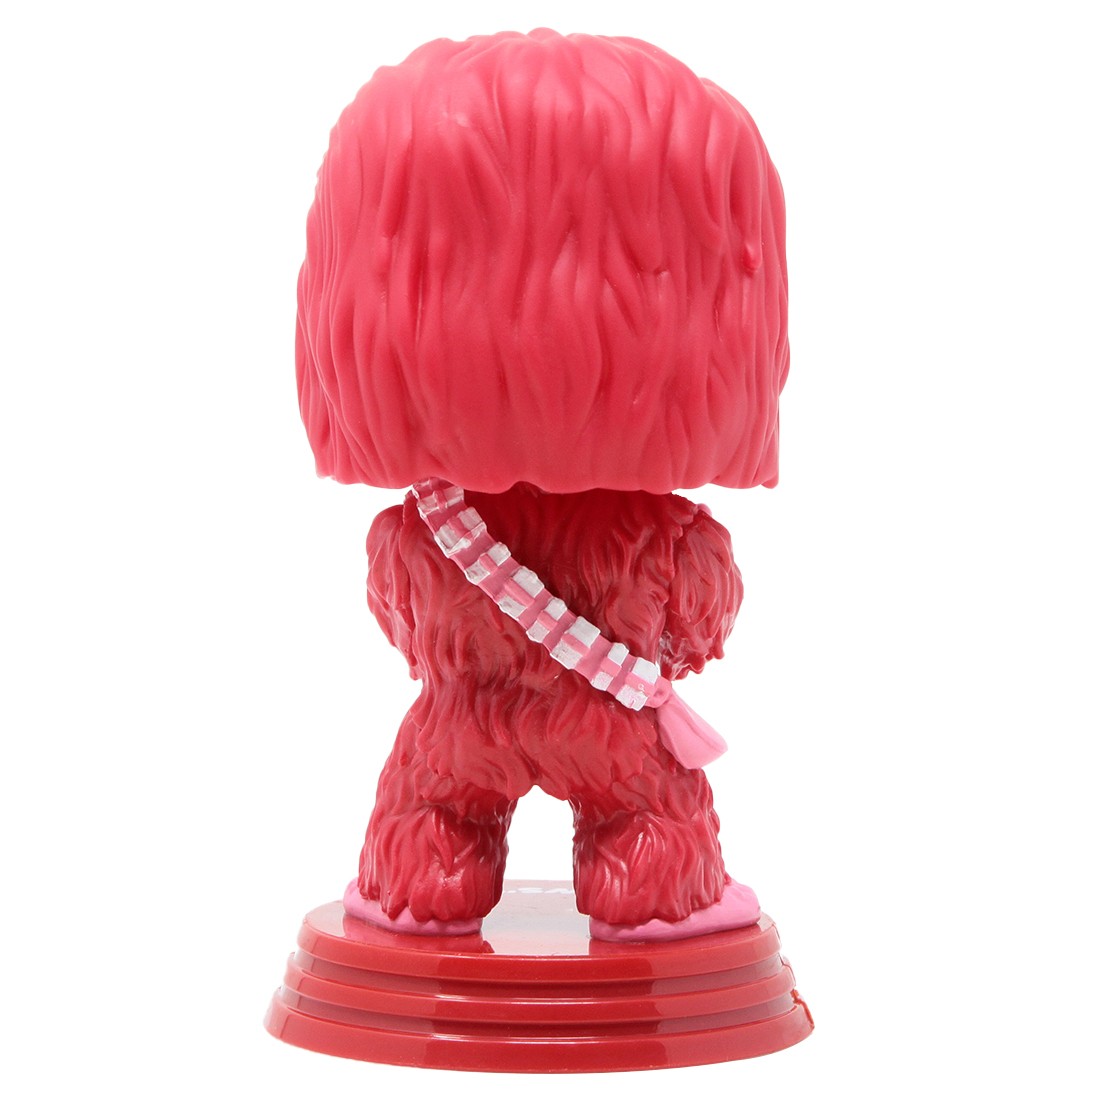 Funko POP Star Wars Valentines - Chewbacca pink